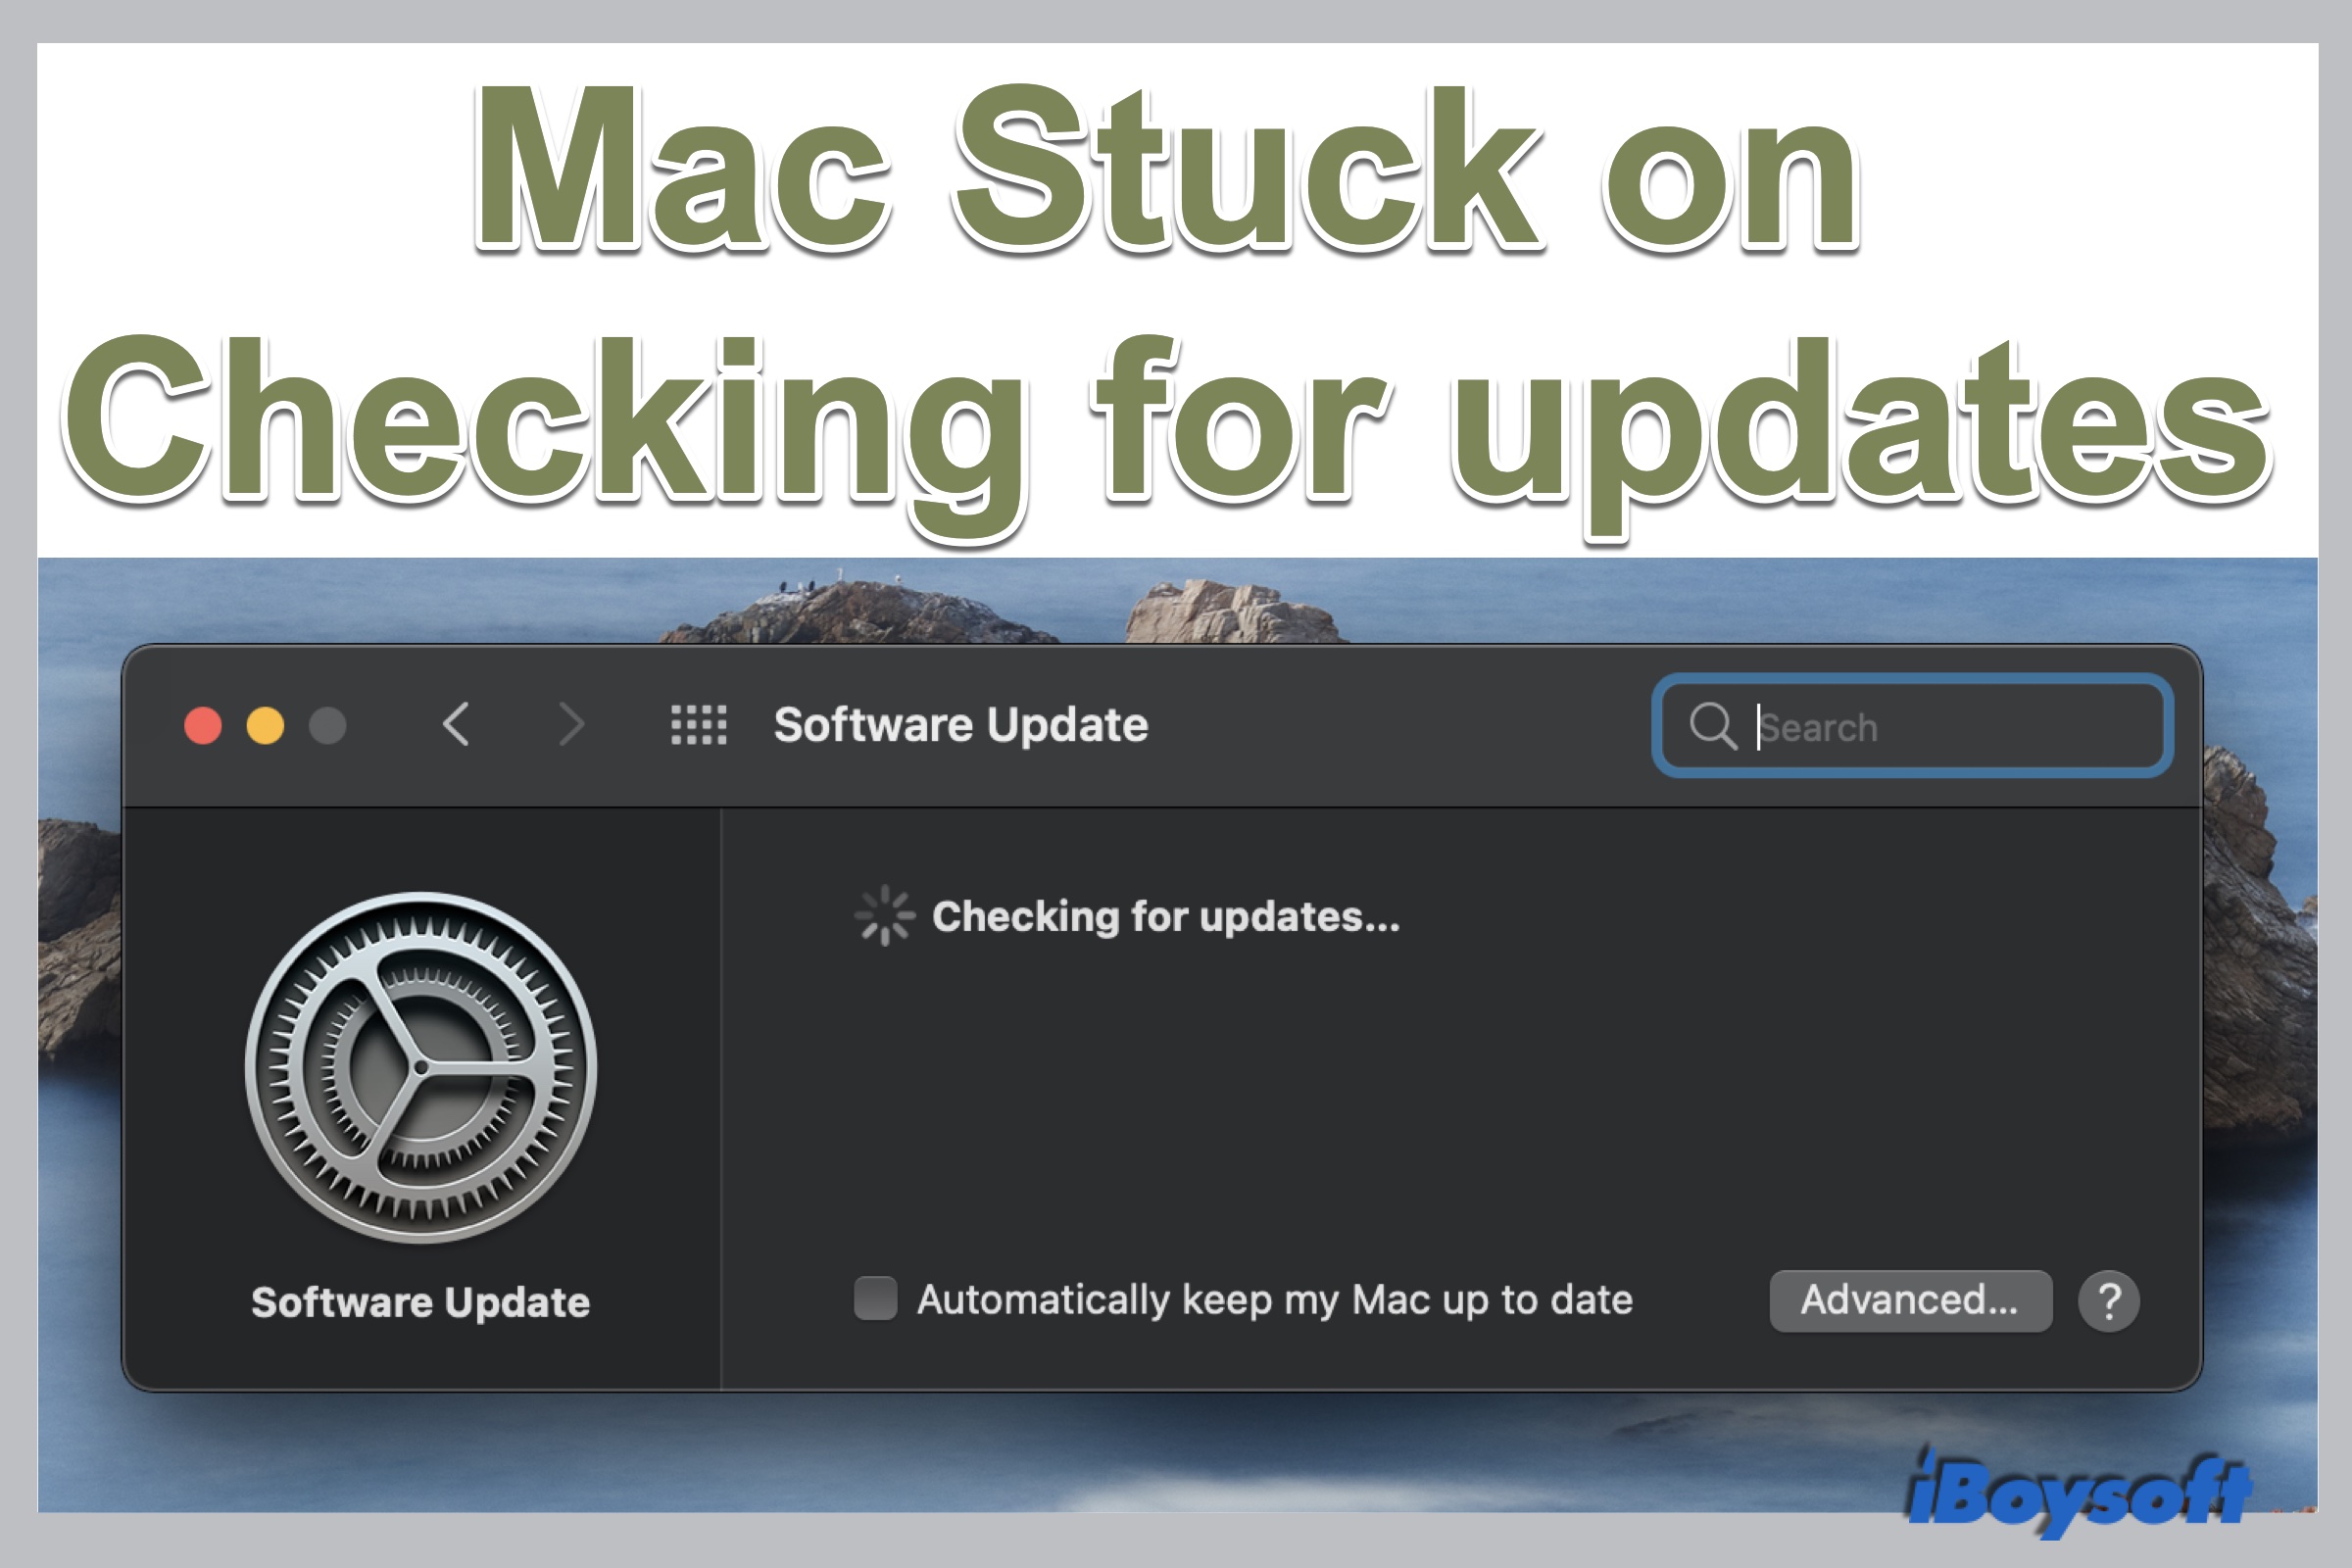 Passo 3: Verifique se há atualizações de software disponíveis e instale-as;
Passo 4: Inicie o iMac no Modo de Segurança pressionando a tecla Shift durante a inicialização;